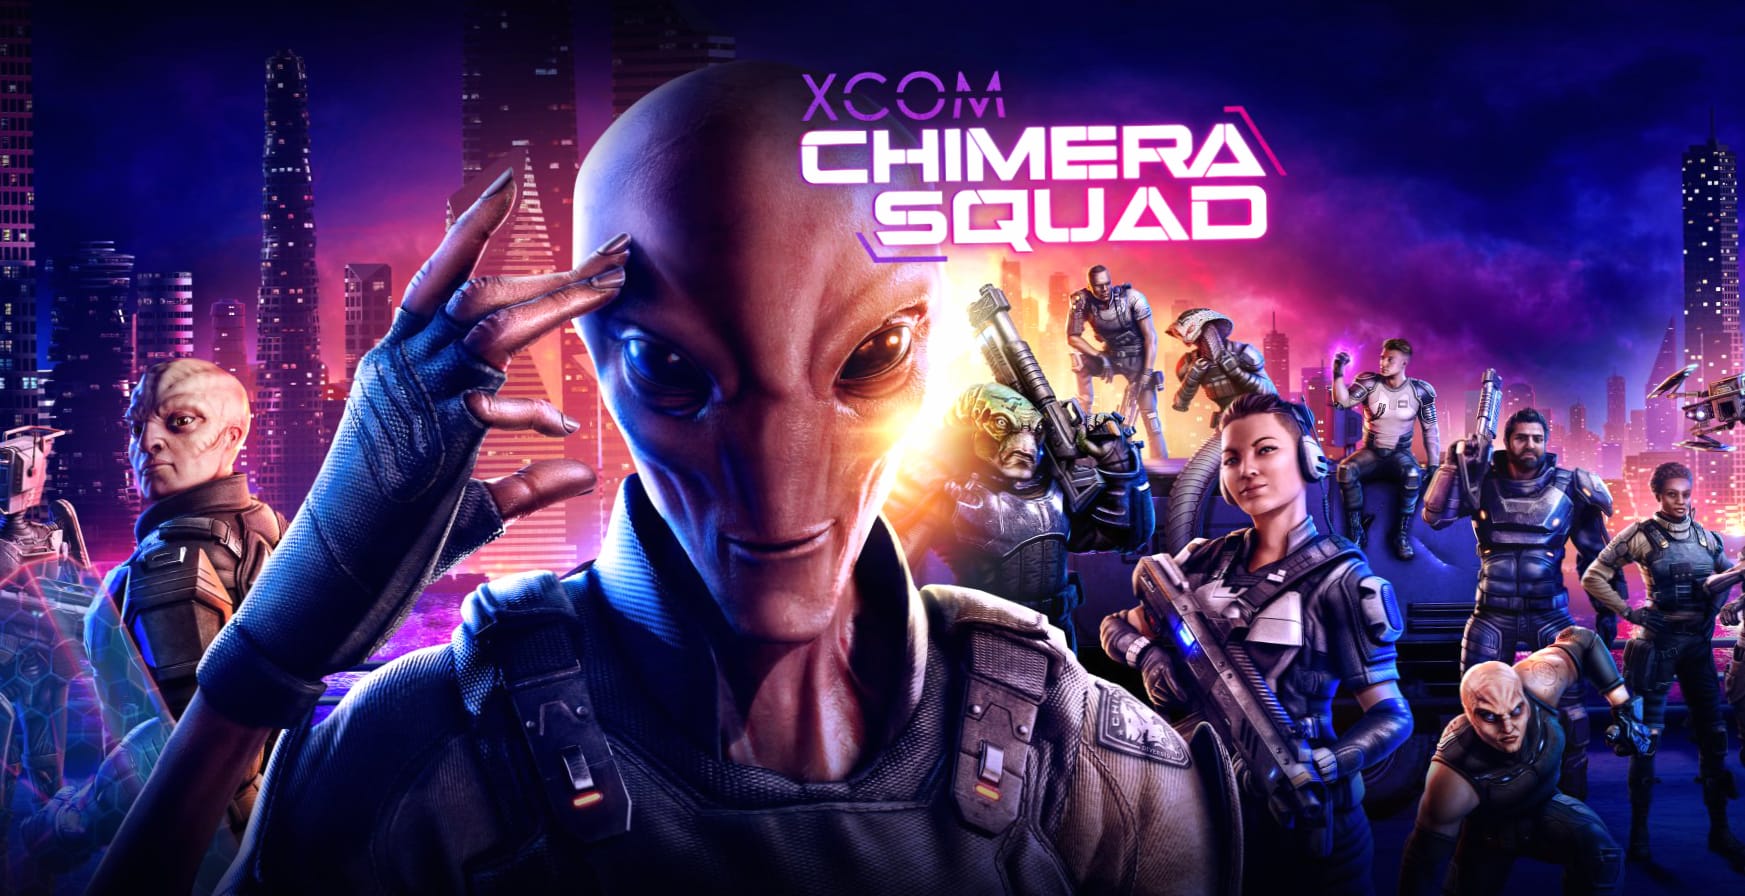 XCOM Chimera Squad at 1024 x 1024 iPad size wallpapers HD quality